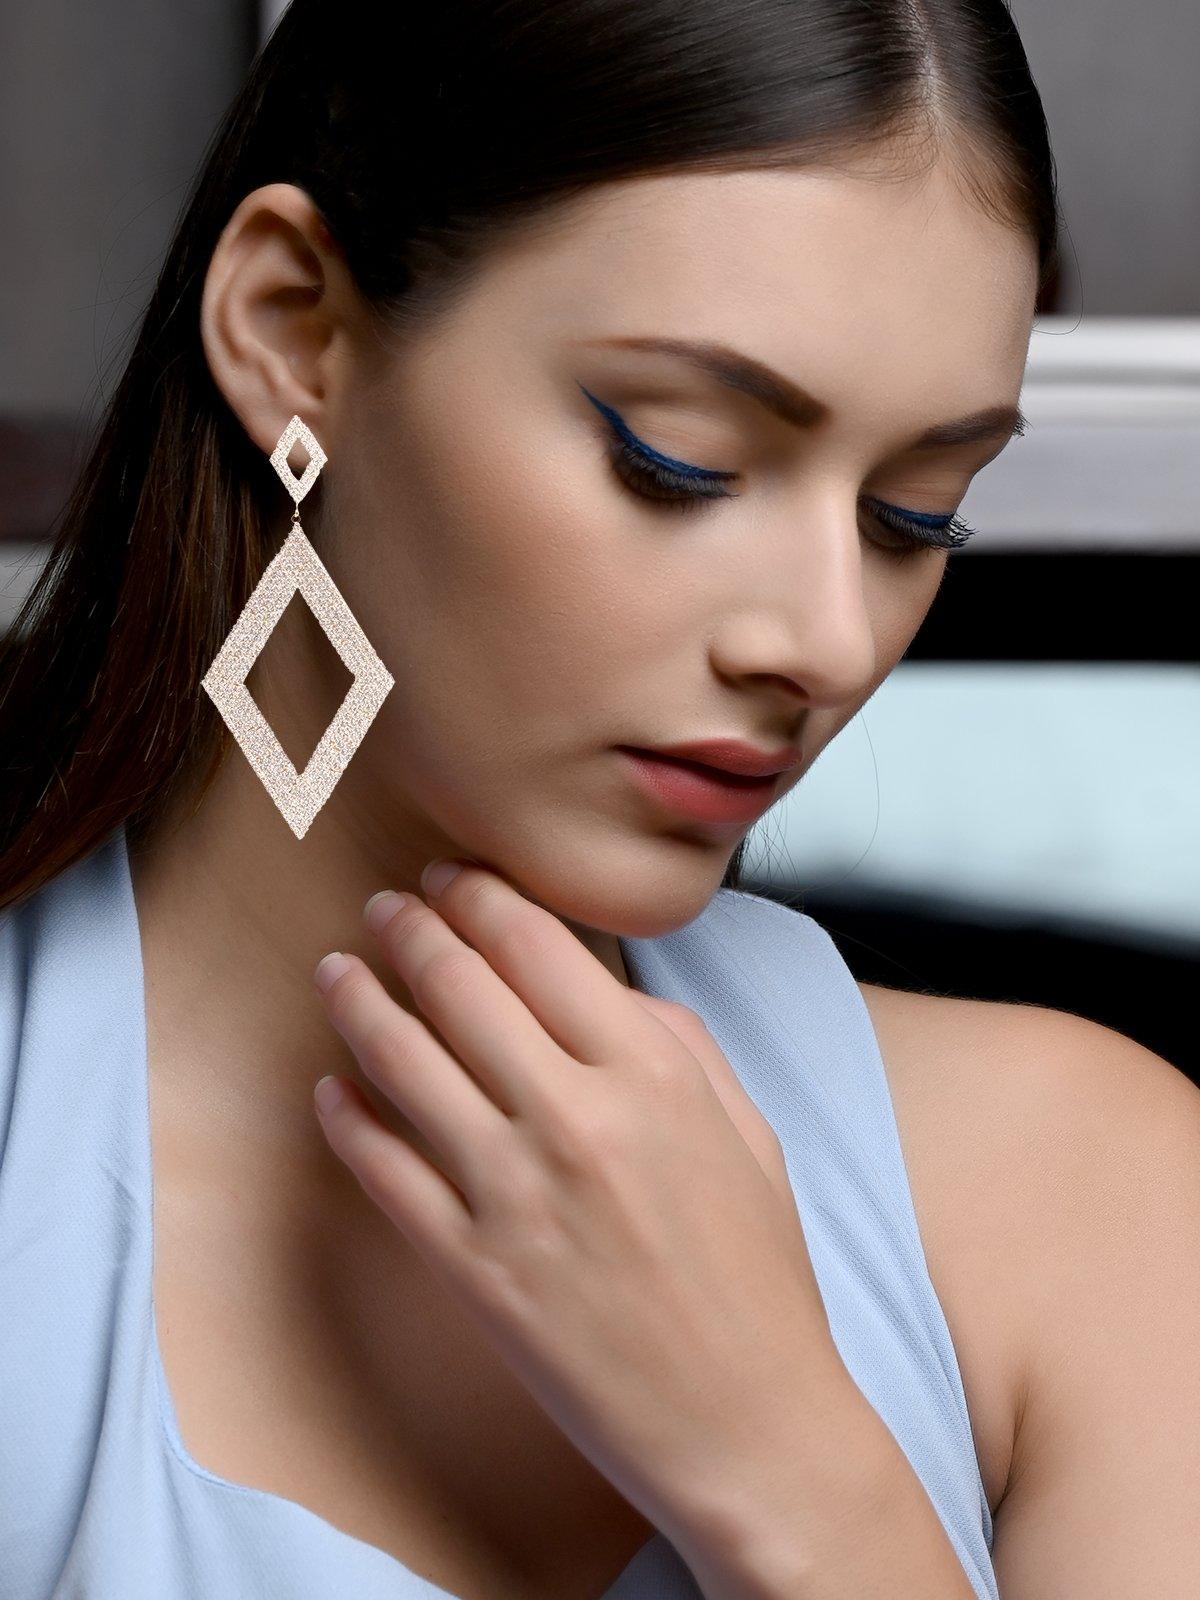 Women's Double Diamond-Shaped Crystal-Embellished Gold-Tone Earrings - Odette